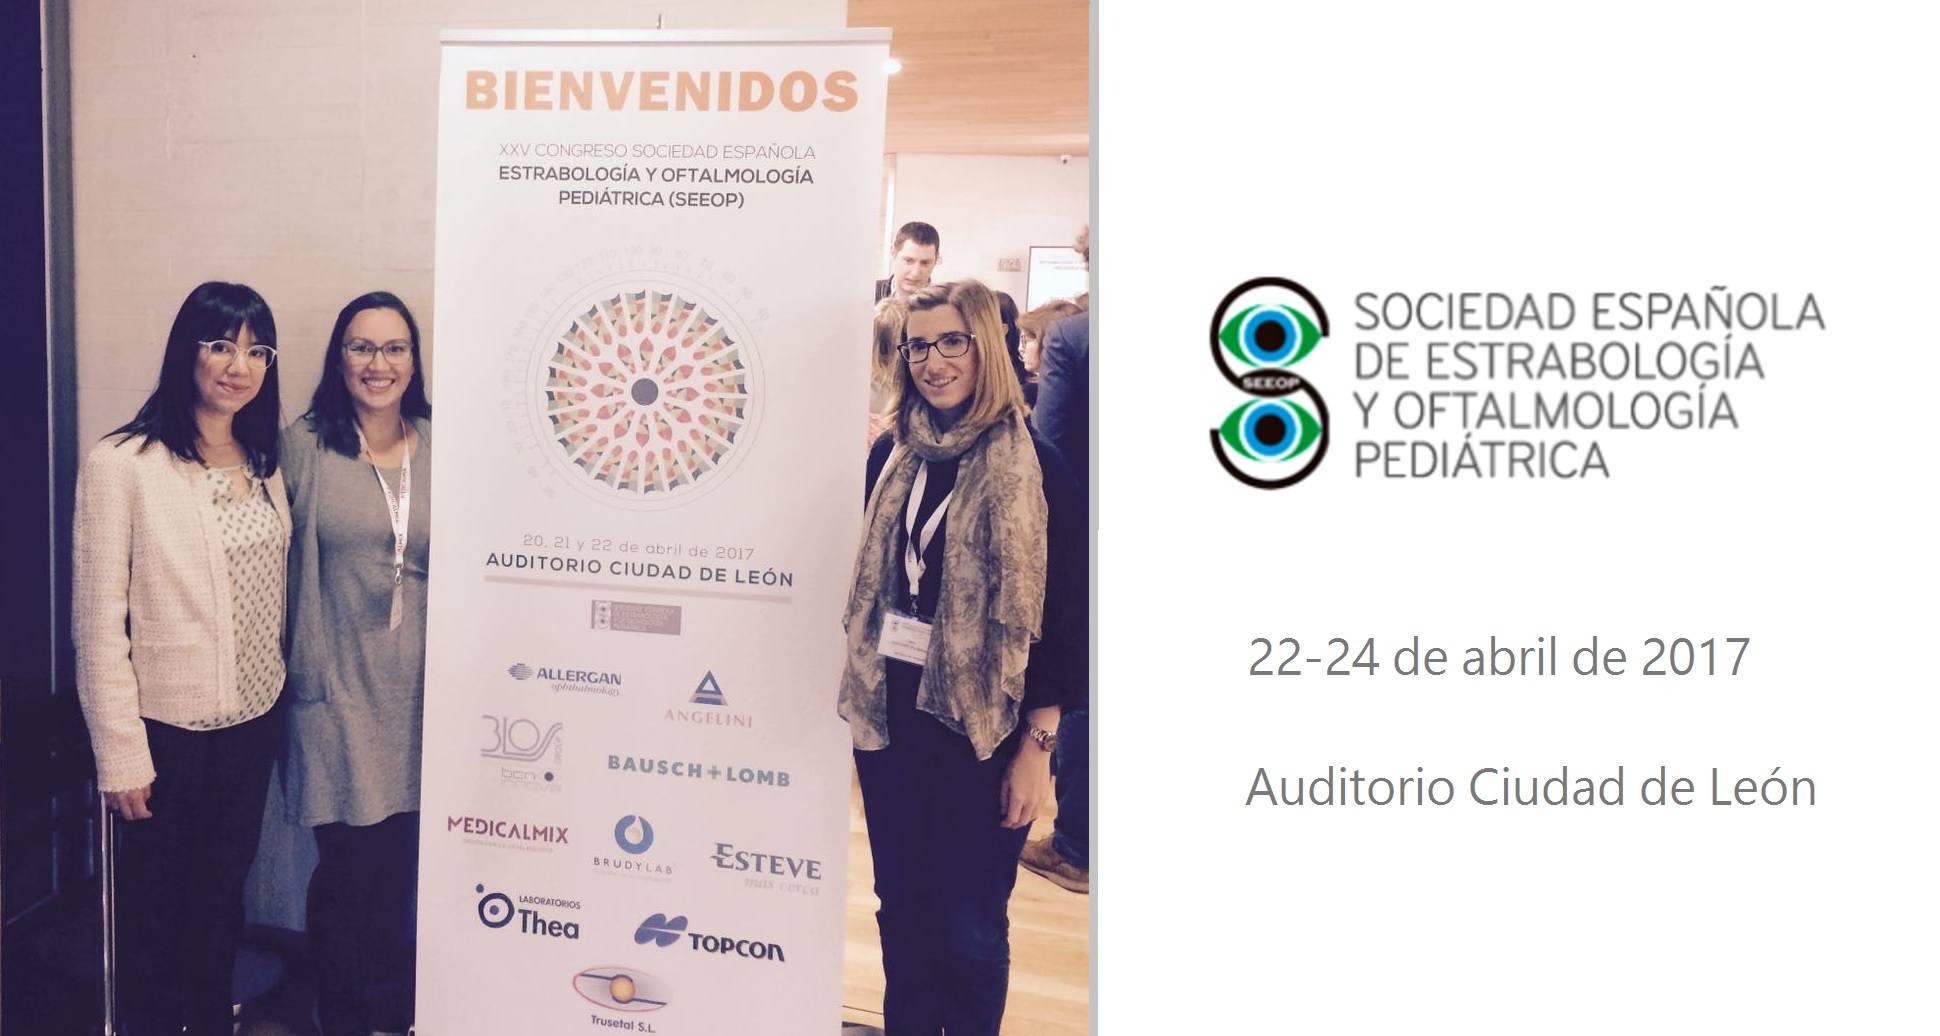 Miembros de ICR presentan varias comunicaciones en el Congreso de la Sociedad Española de Estrabología y Oftalmología Pediátrica